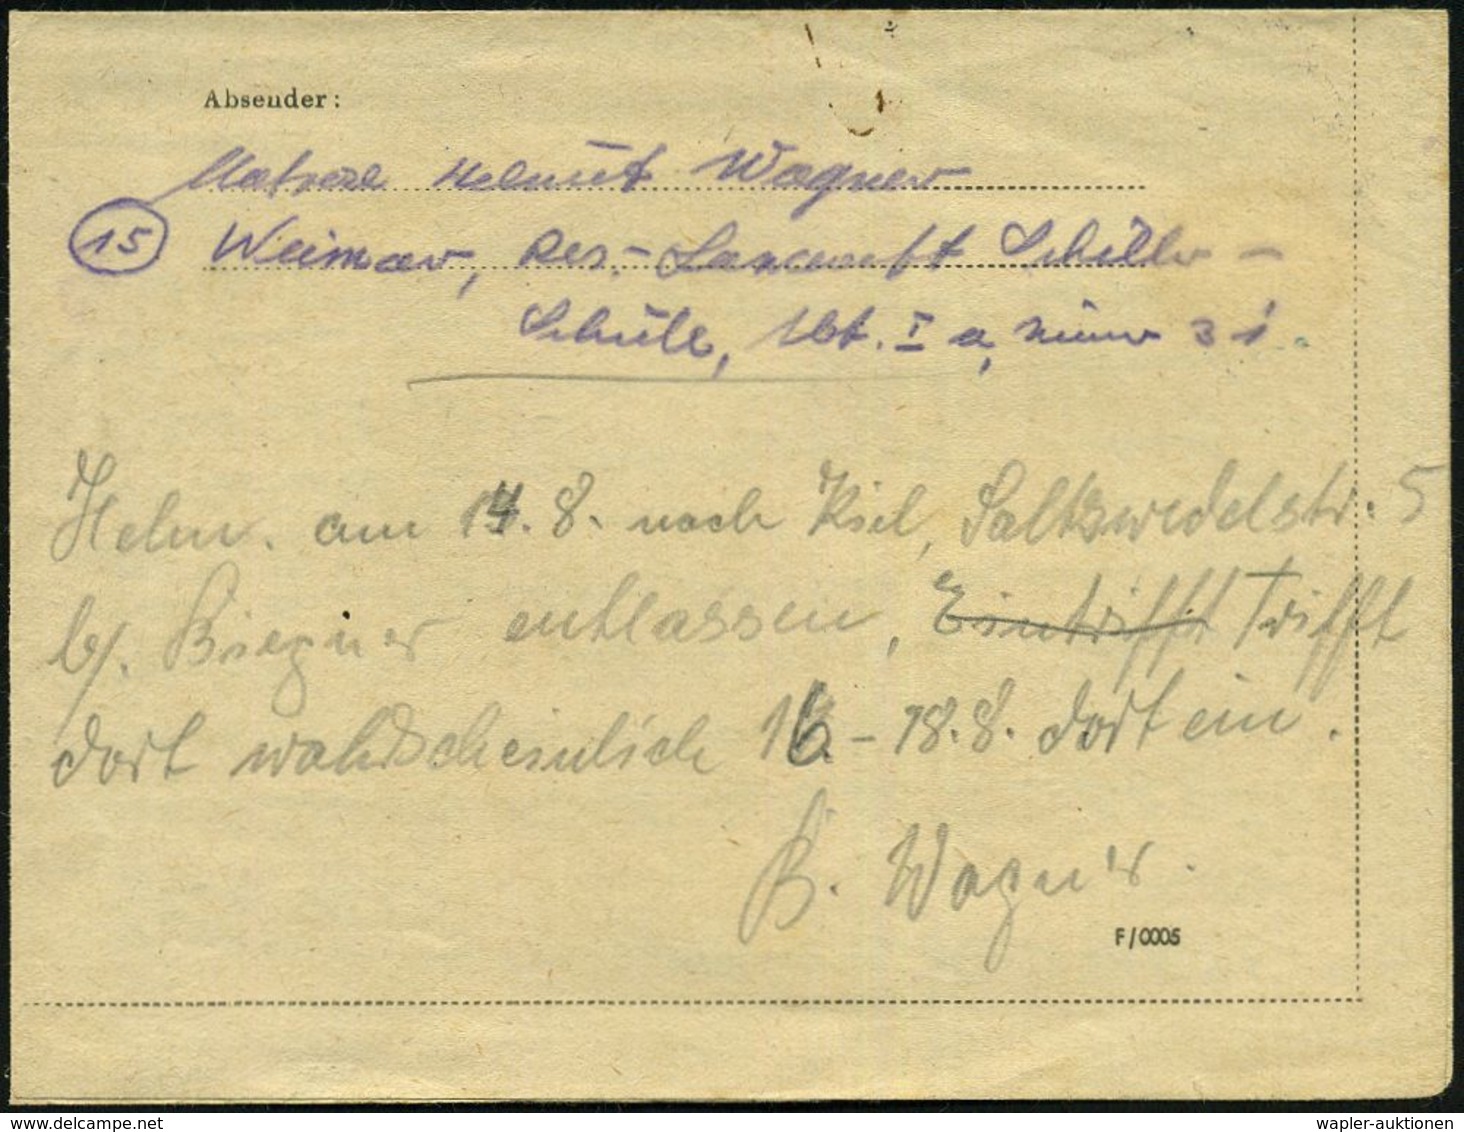 WEIMAR 1/ R 1945 (24.3.) 2K-Steg + 1K-HdN Reserve-Lazarett (abgenutzt) + Rs. Hs. Abs.: ".. Res.-Lazarett Schiller-Schule - Seconda Guerra Mondiale